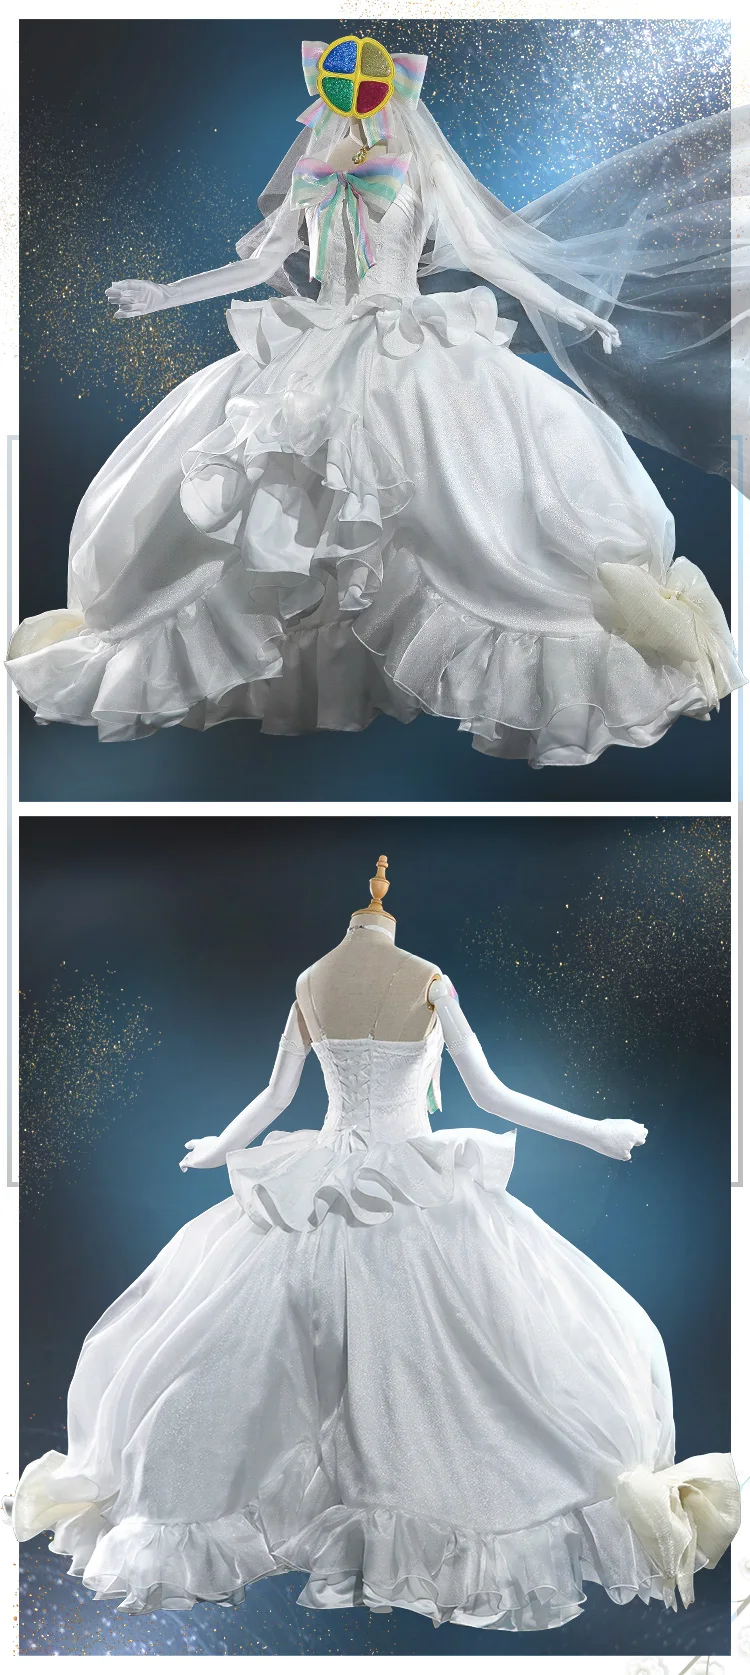 Аниме Shugo Chara Hinamori Аму богиня стража белое свадебное платье романтическая униформа Косплей Костюм Хэллоуин